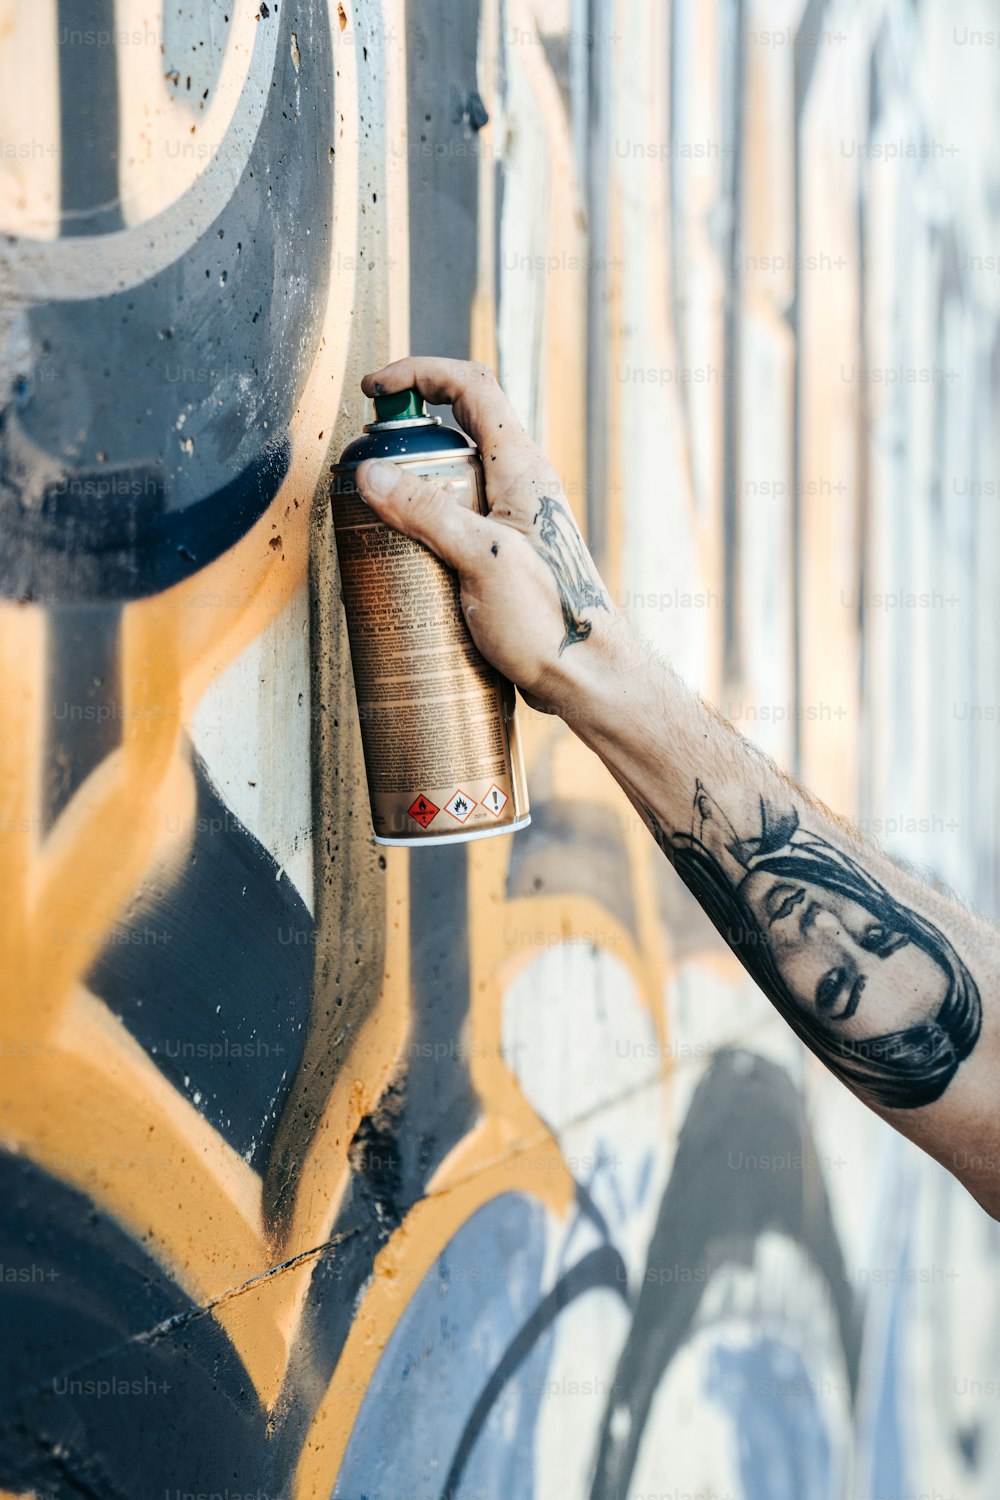 Un hombre pinta con graffiti una pared con graffiti